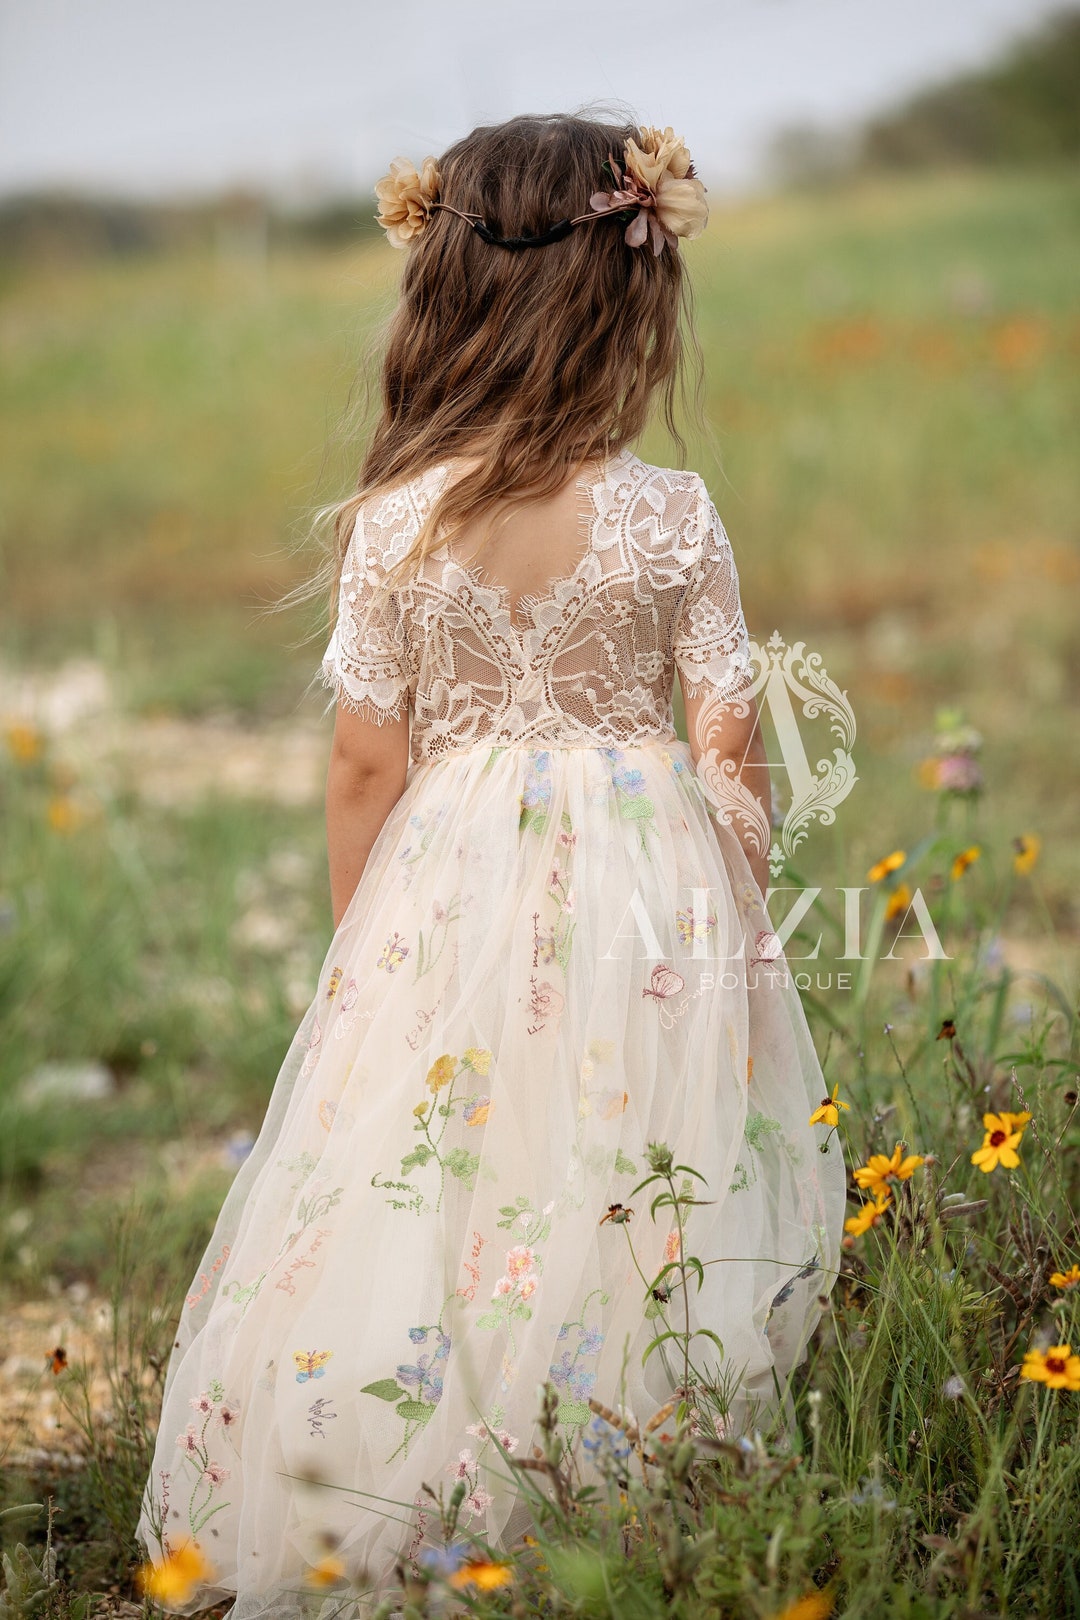 Flower Embroidery Tulle Dress for Flower Girl Spring Dress - Etsy